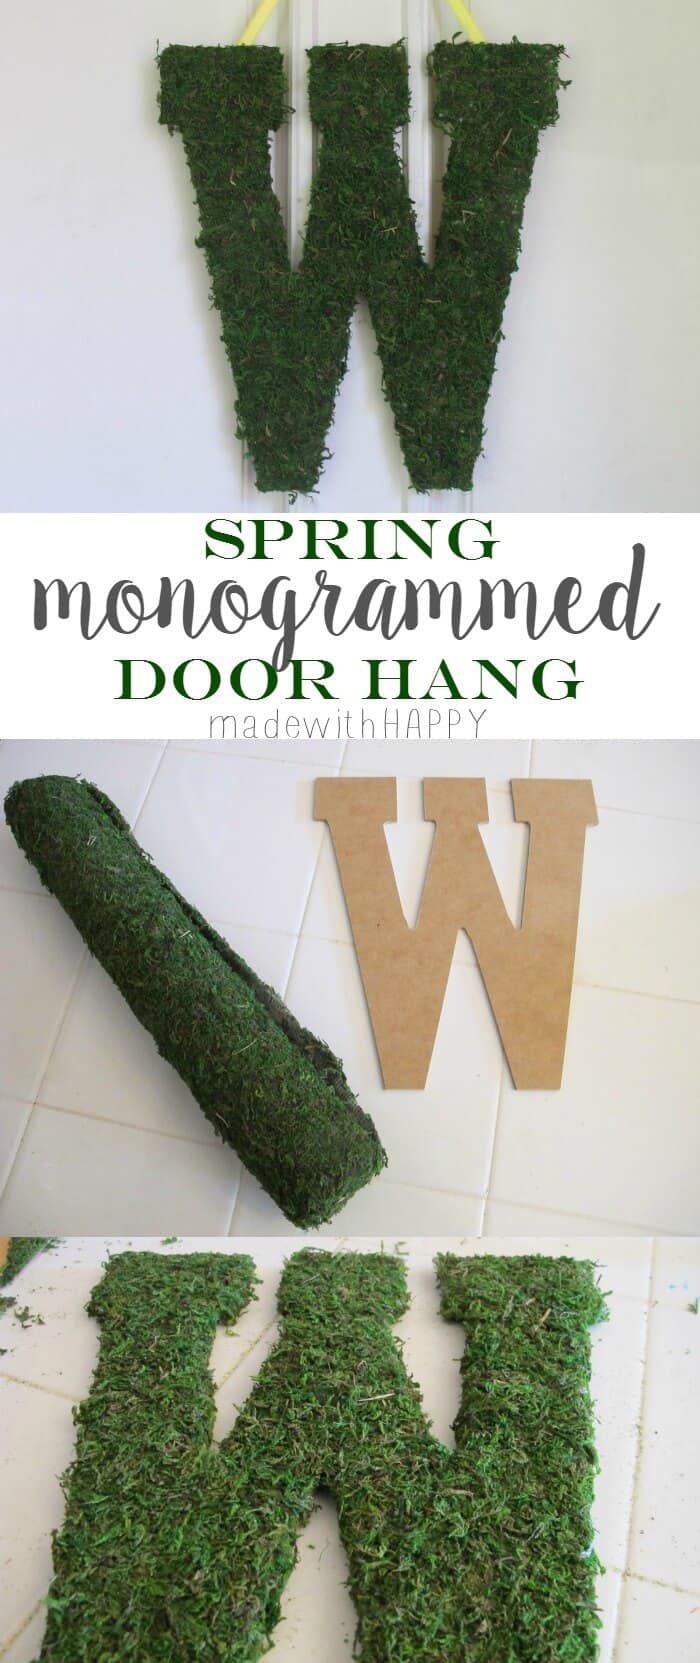 Monogrammed Door Hang - Moss Covered Monogrammed Door Hang - www.madewithHAPPY.com